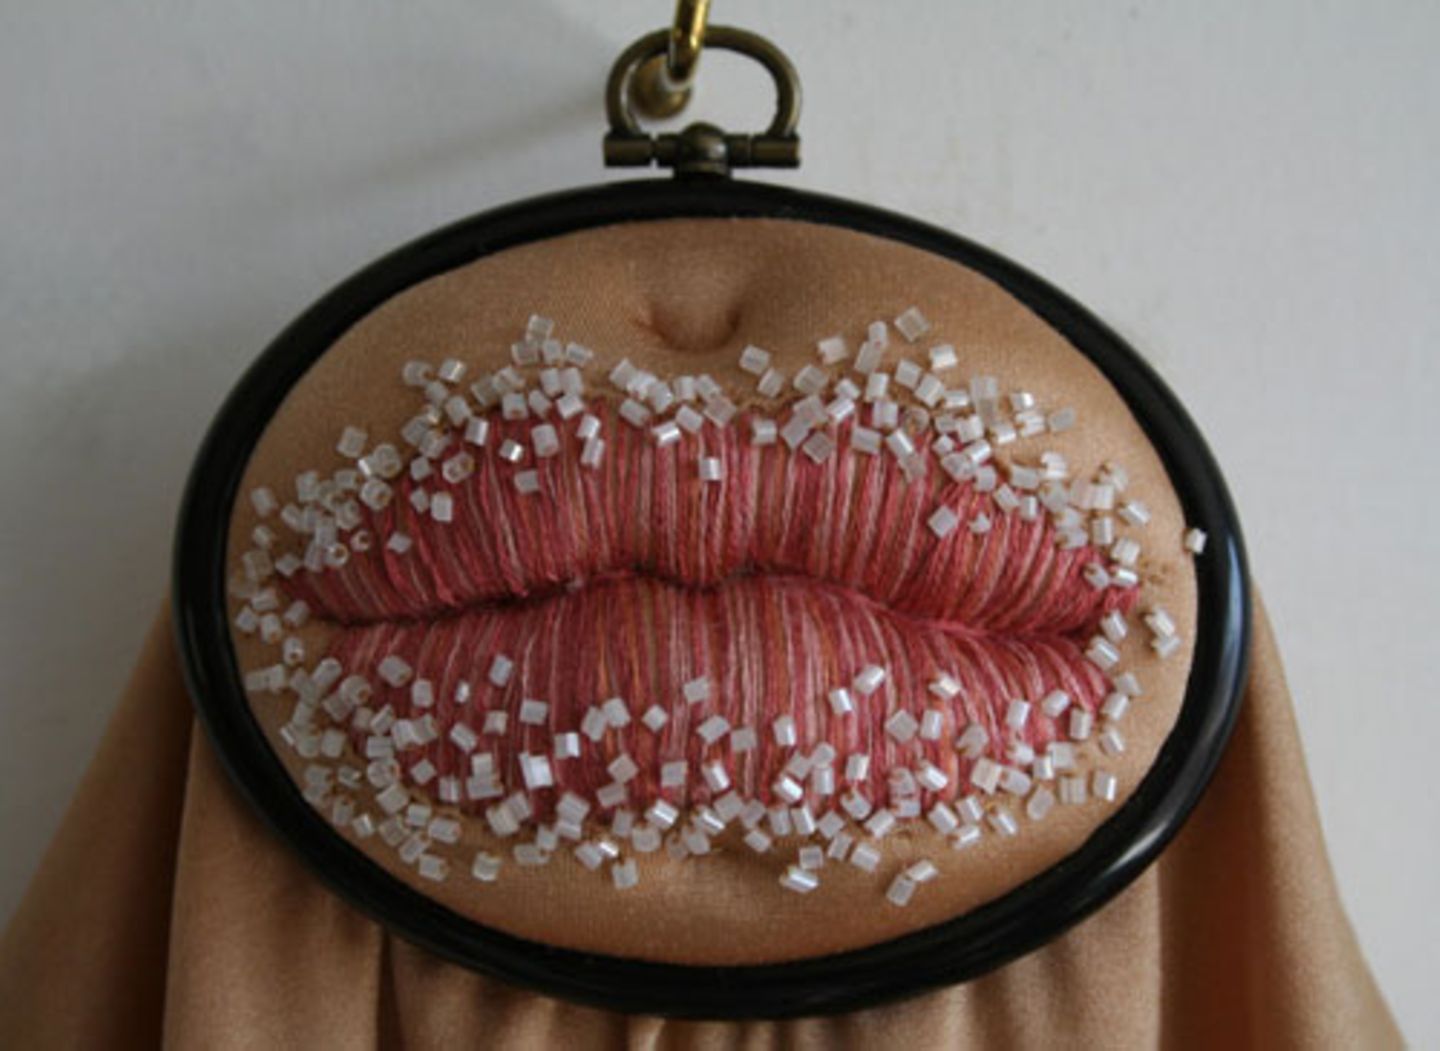 Zucker auf den Lippen: Diese Stickerei hat den Titel "Sugar Lips".